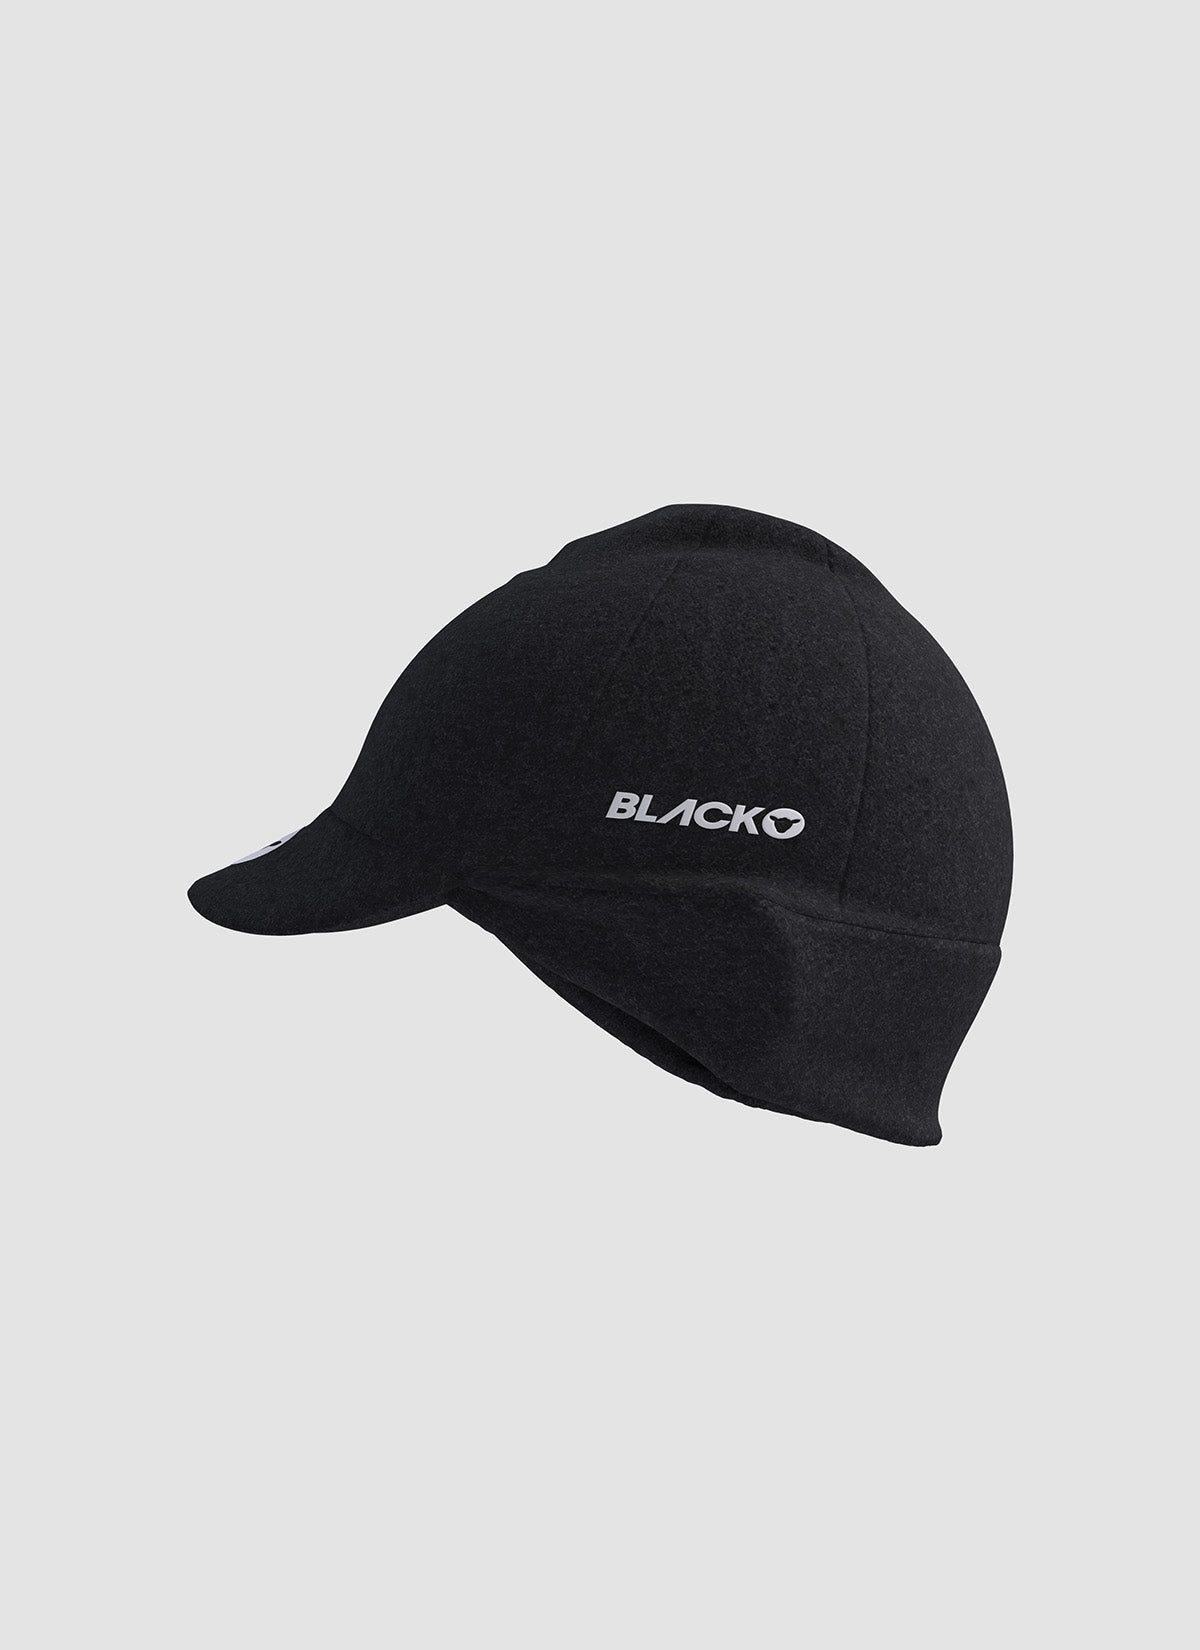 ThermoFleece Cap - Black